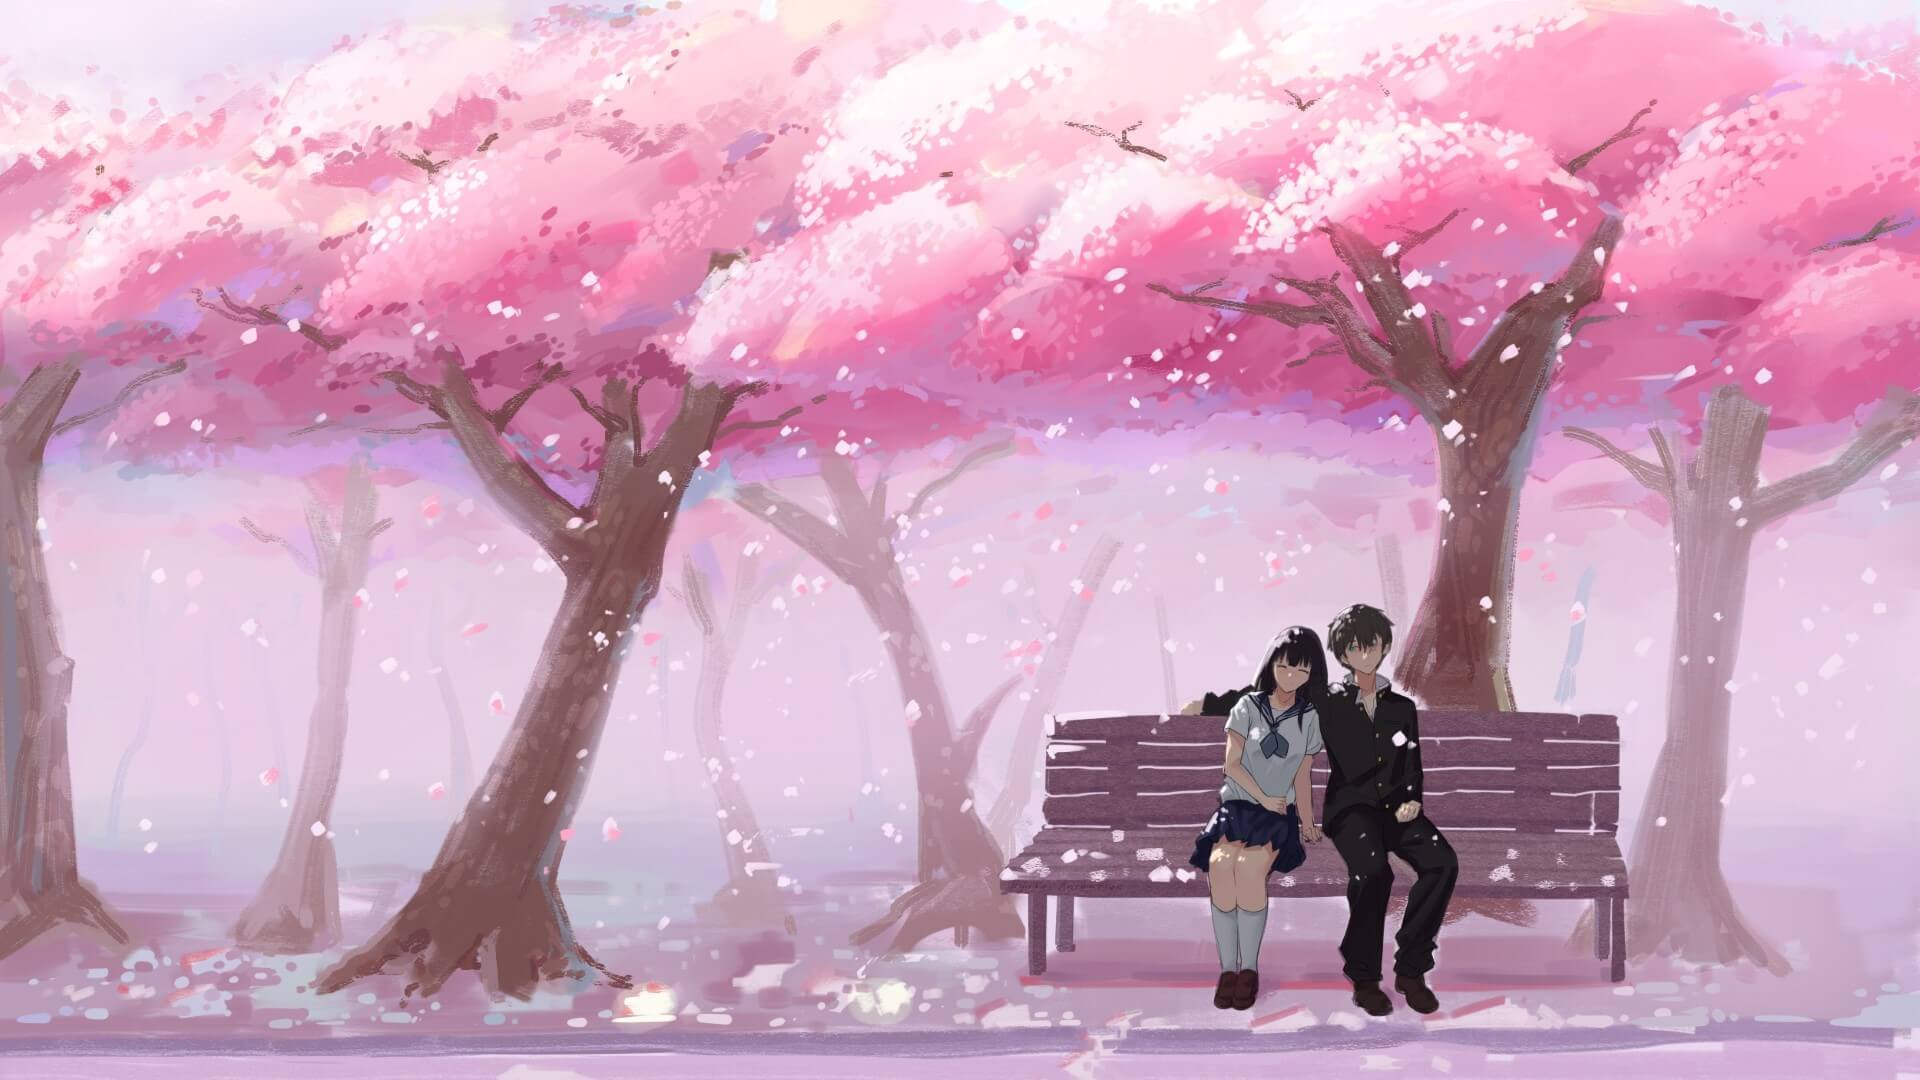 Xem tăng Hình ảnh nền Anime hoa anh bới rơi lãng mạn